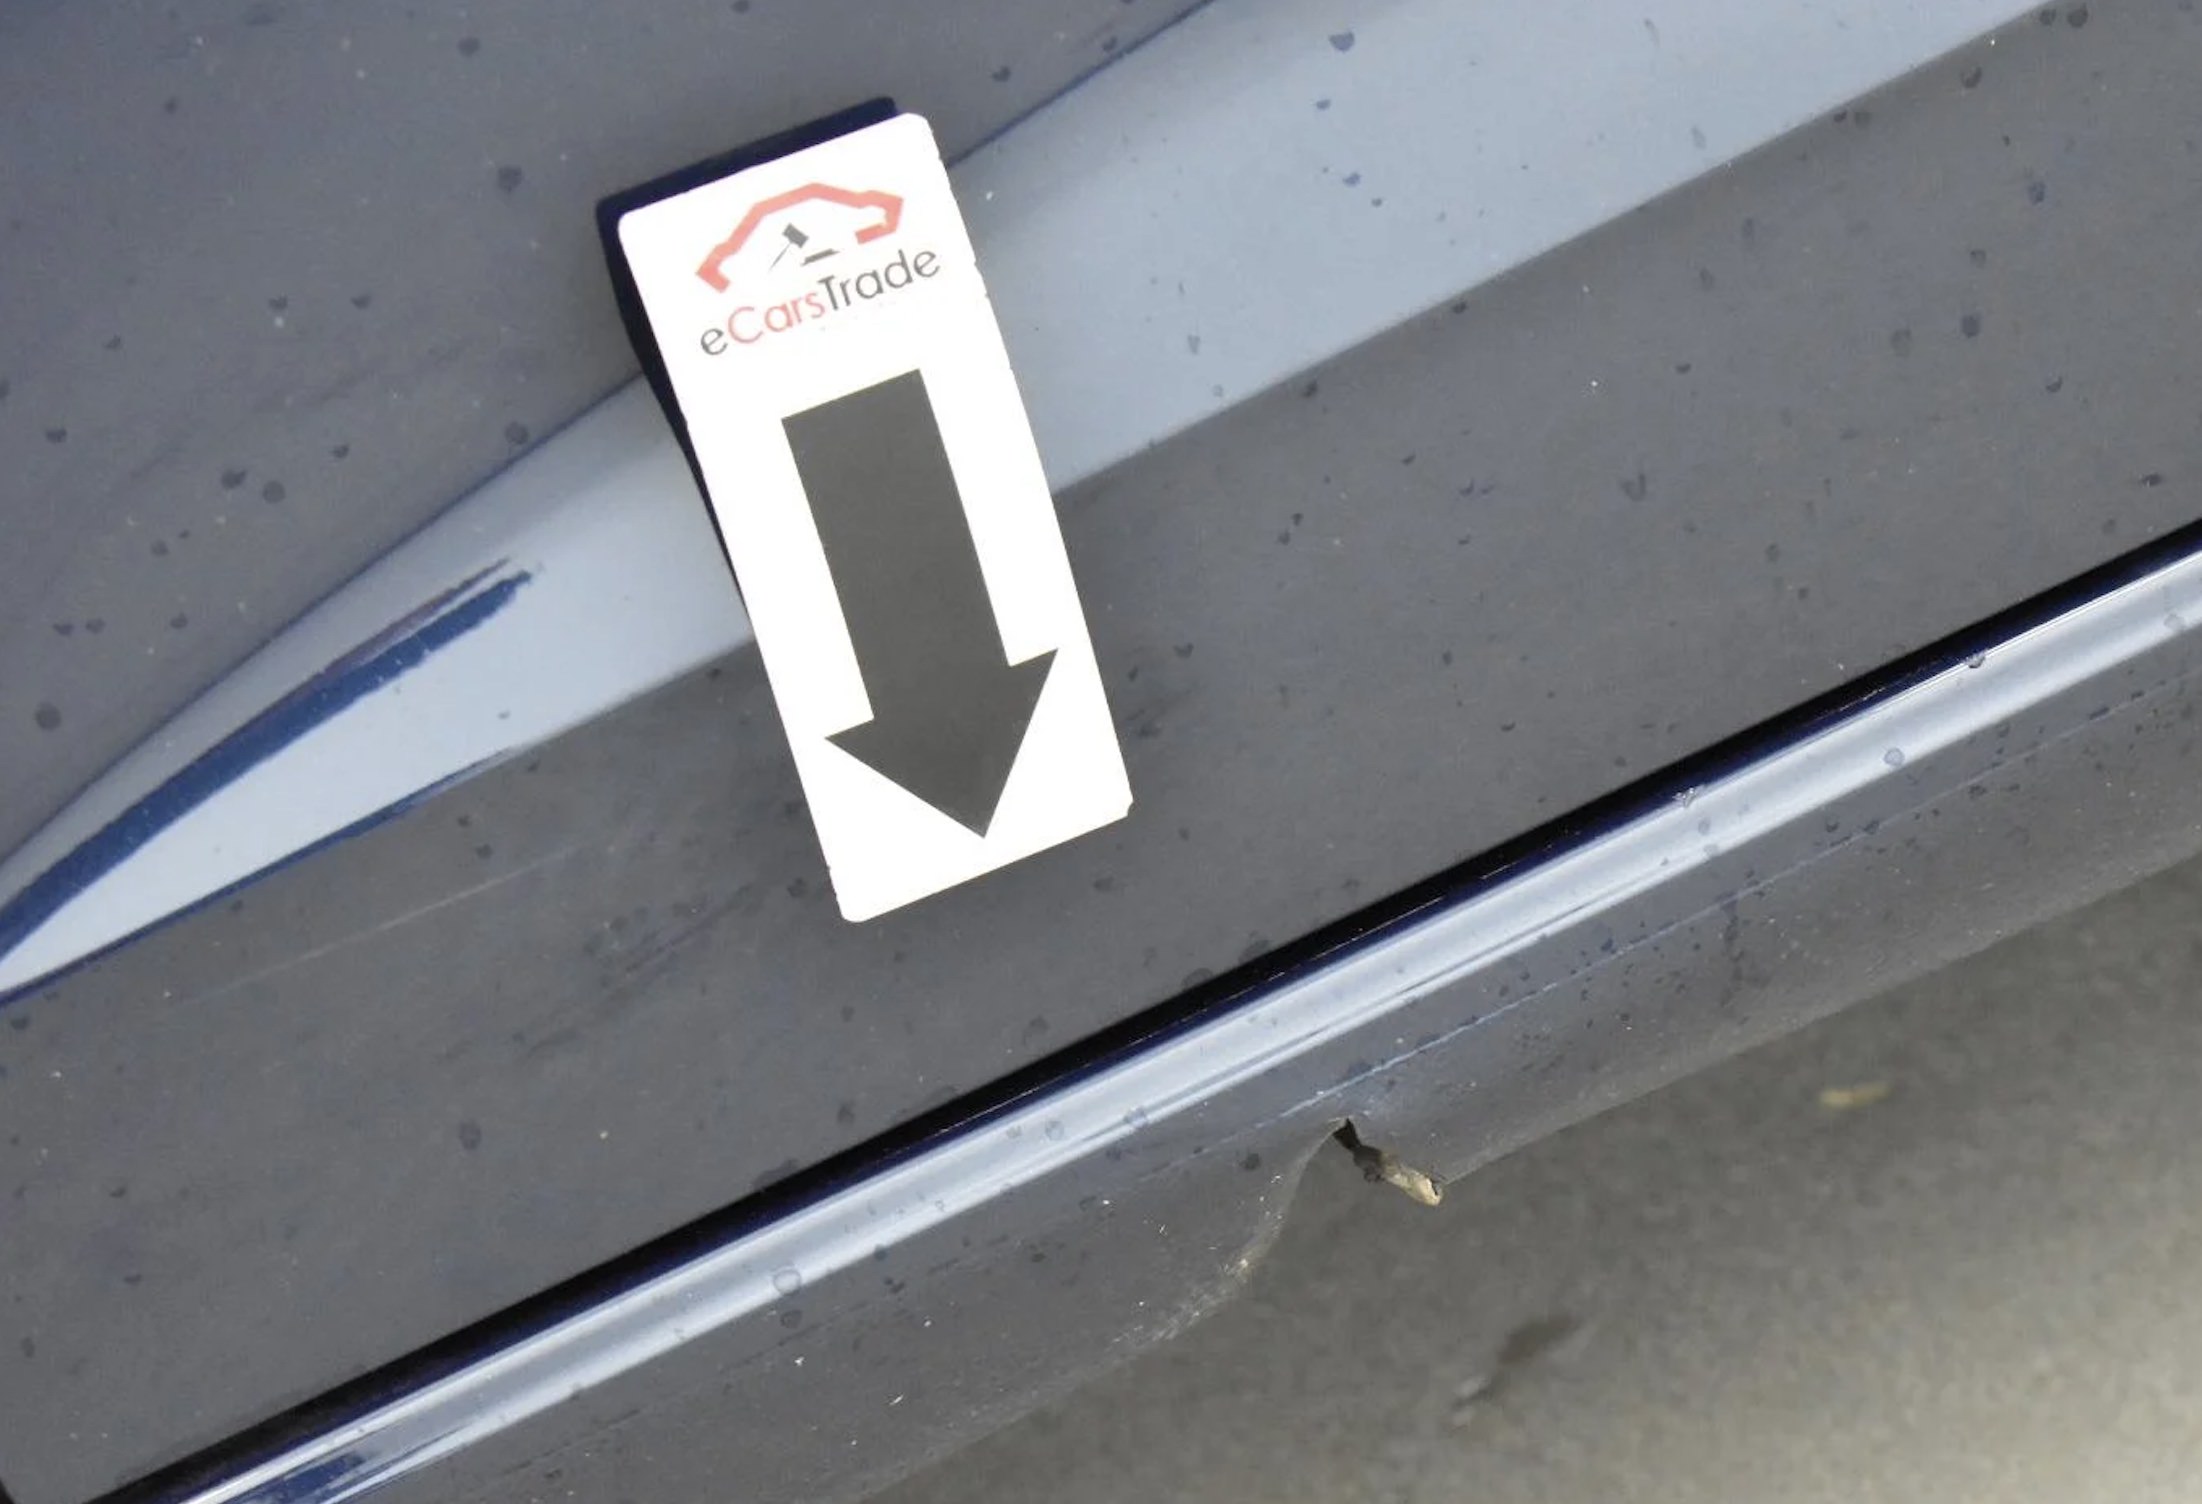 Impressão de seta eCarsTrade apontando para um pequeno dano no carro